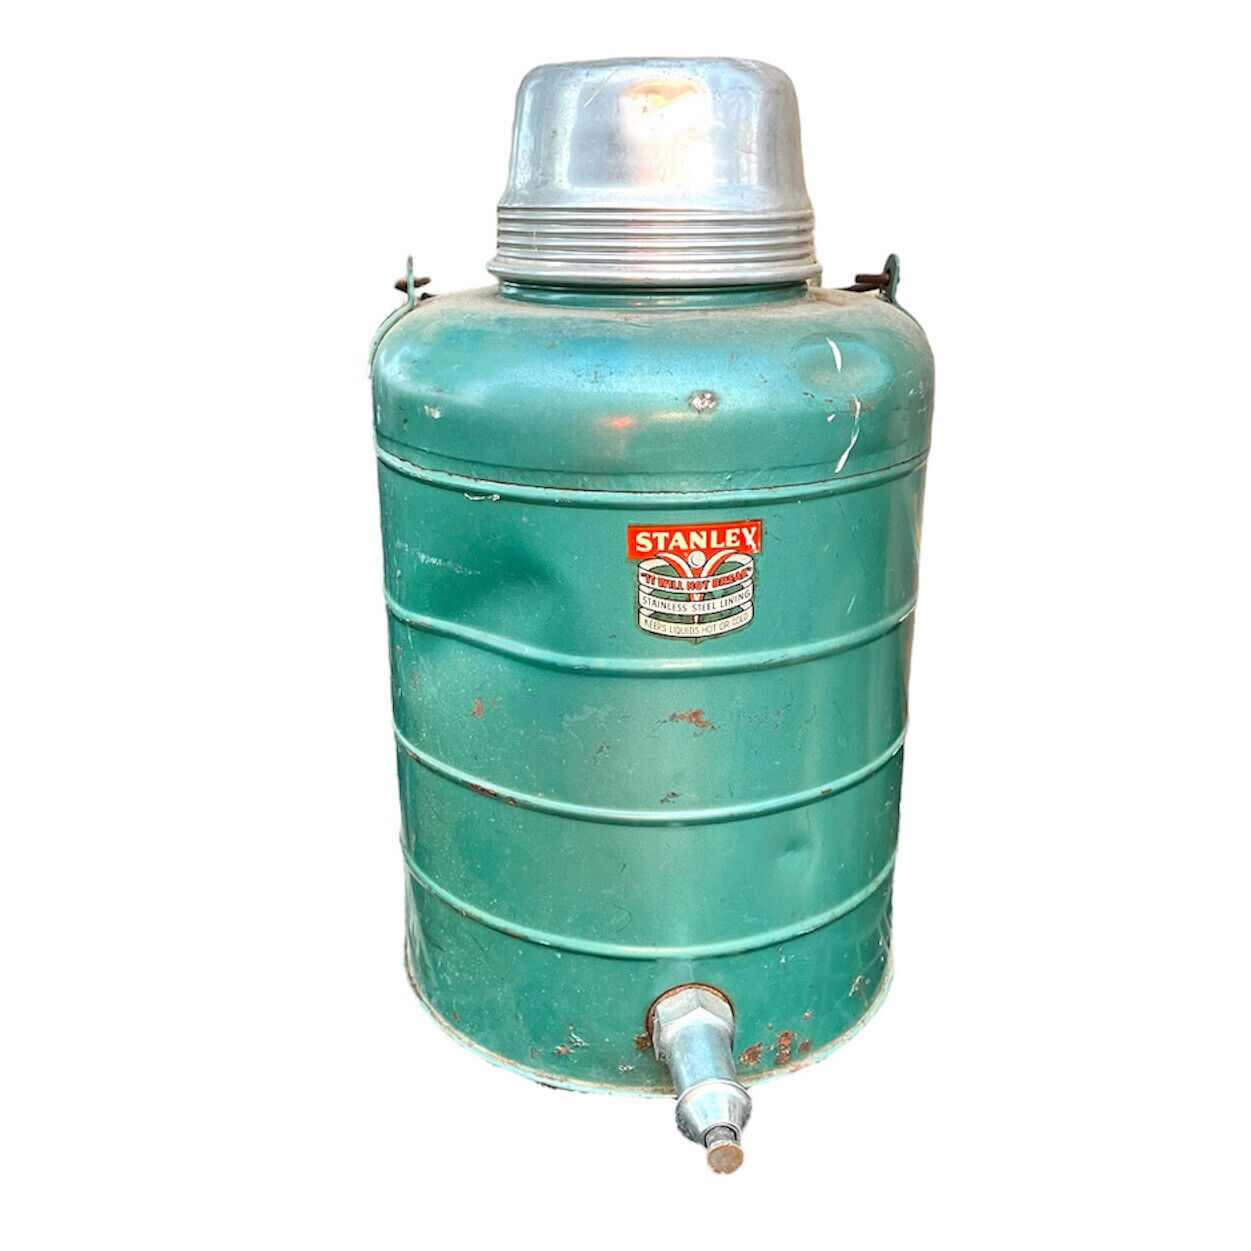 1940s Stanley It Will Not Break Thermal Water Dispenser Cooler w Working Spigot